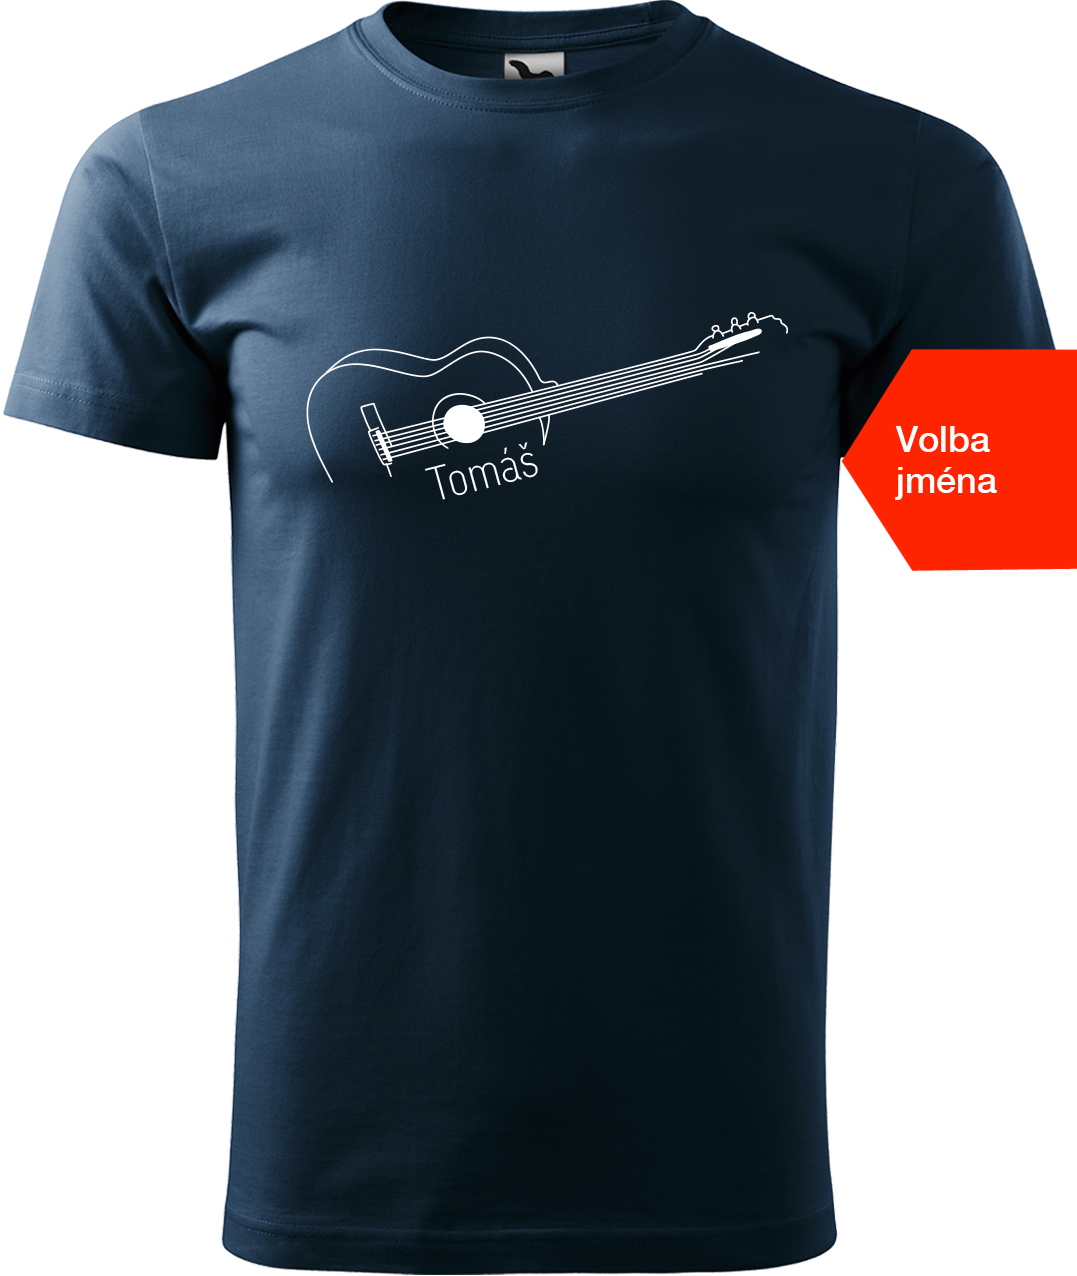 Pánské tričko s kytarou se jménem - Stylizovaná kytara Velikost: L, Barva: Námořní modrá (02), Střih: pánský